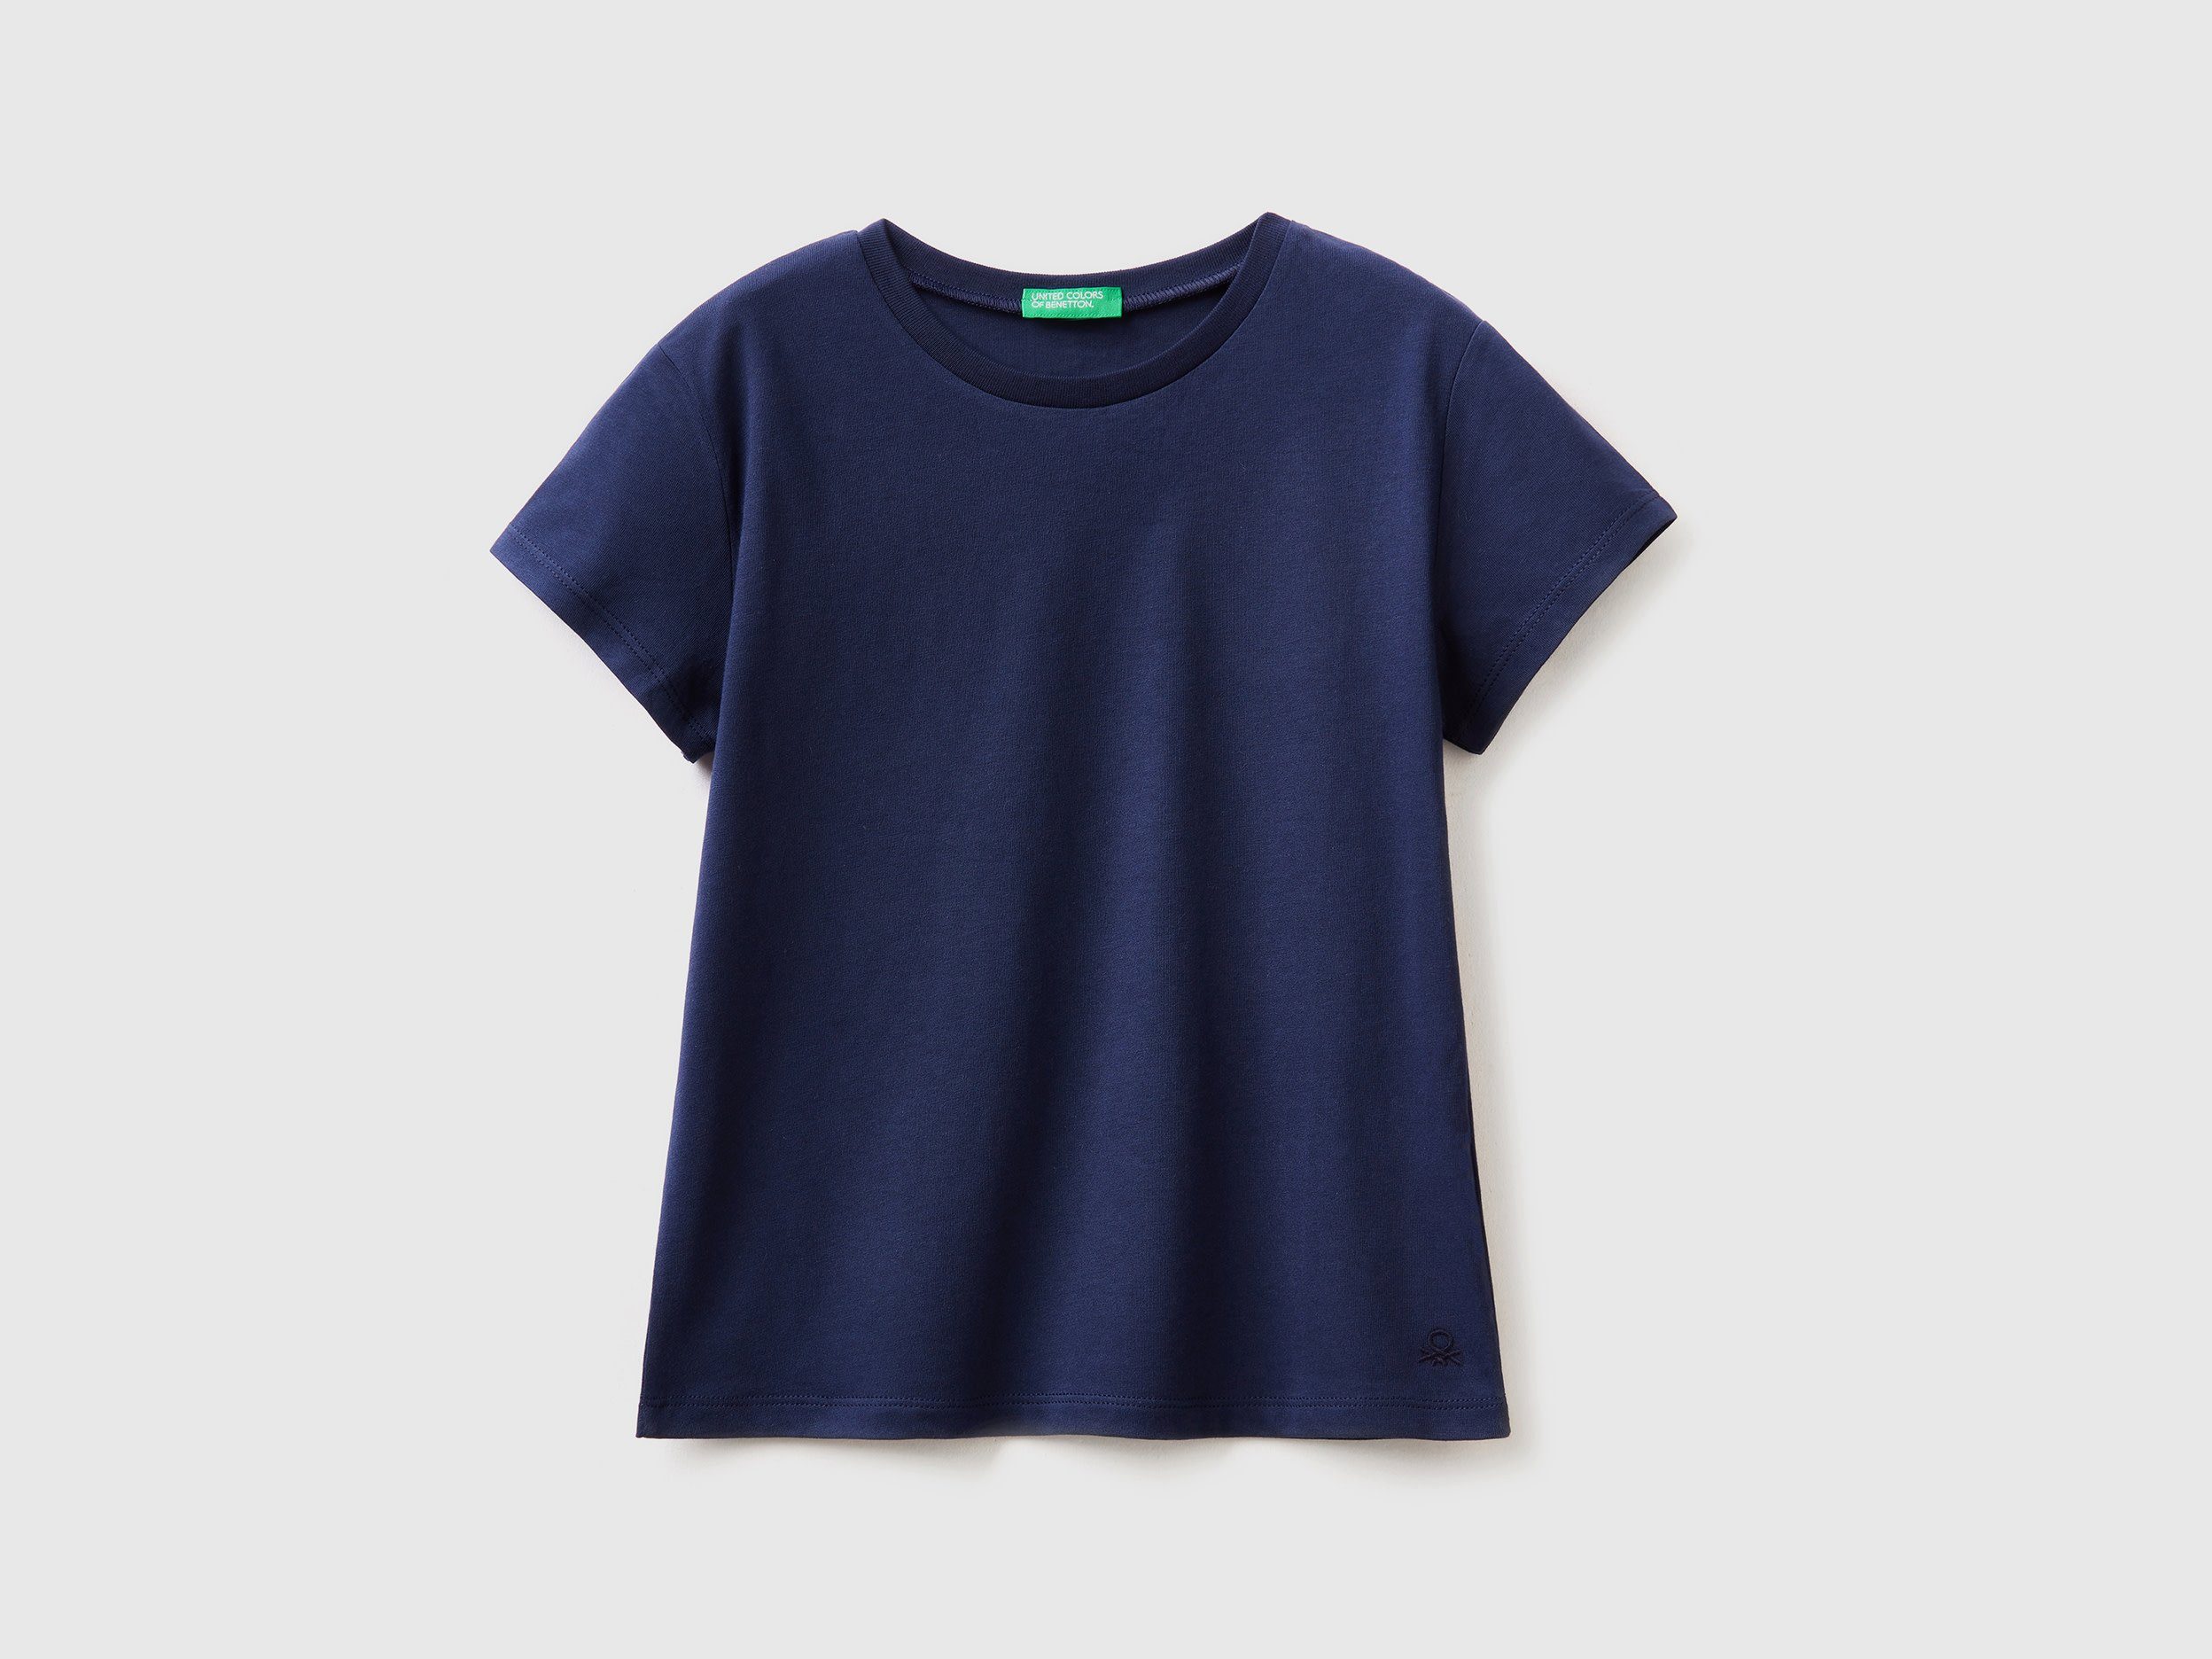 mit von Benetton Colors Benetton T-Shirt für of United Markenlabel, Kinder T-Shirt